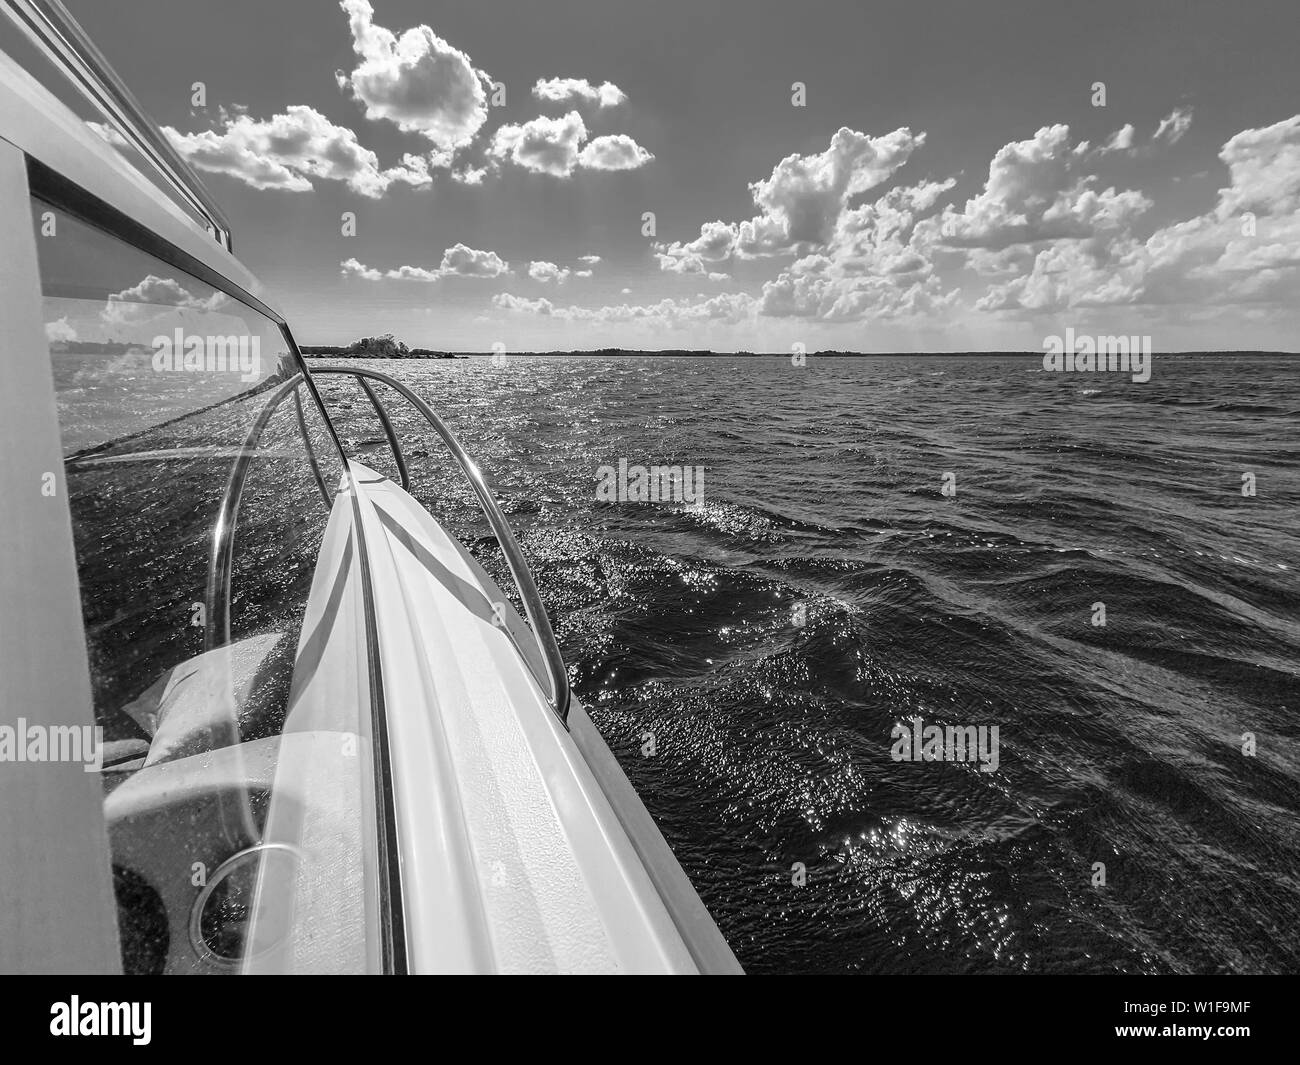 Weiße Boot am blauen Meer. Urlaub, Reisen und Meer Konzept. Stockfoto